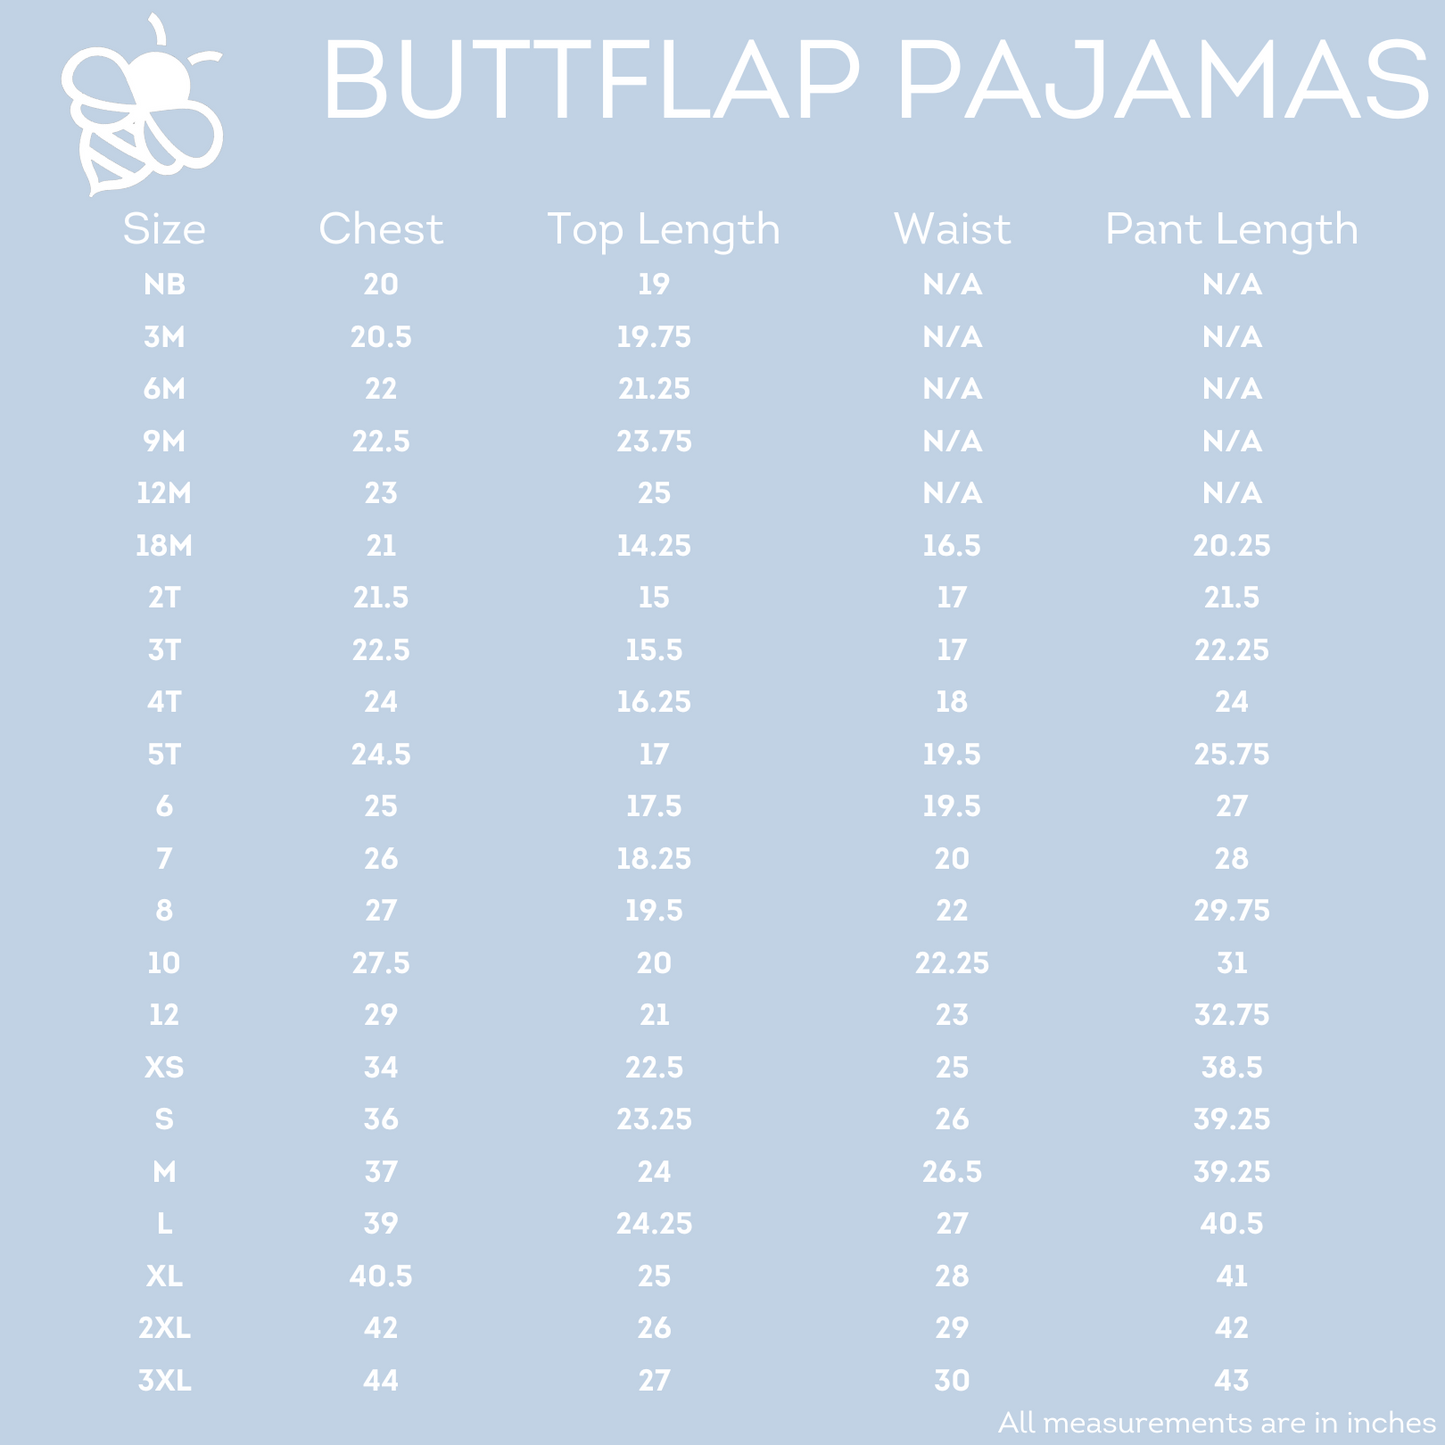 Buttflap Pajamas - Hats & Bats